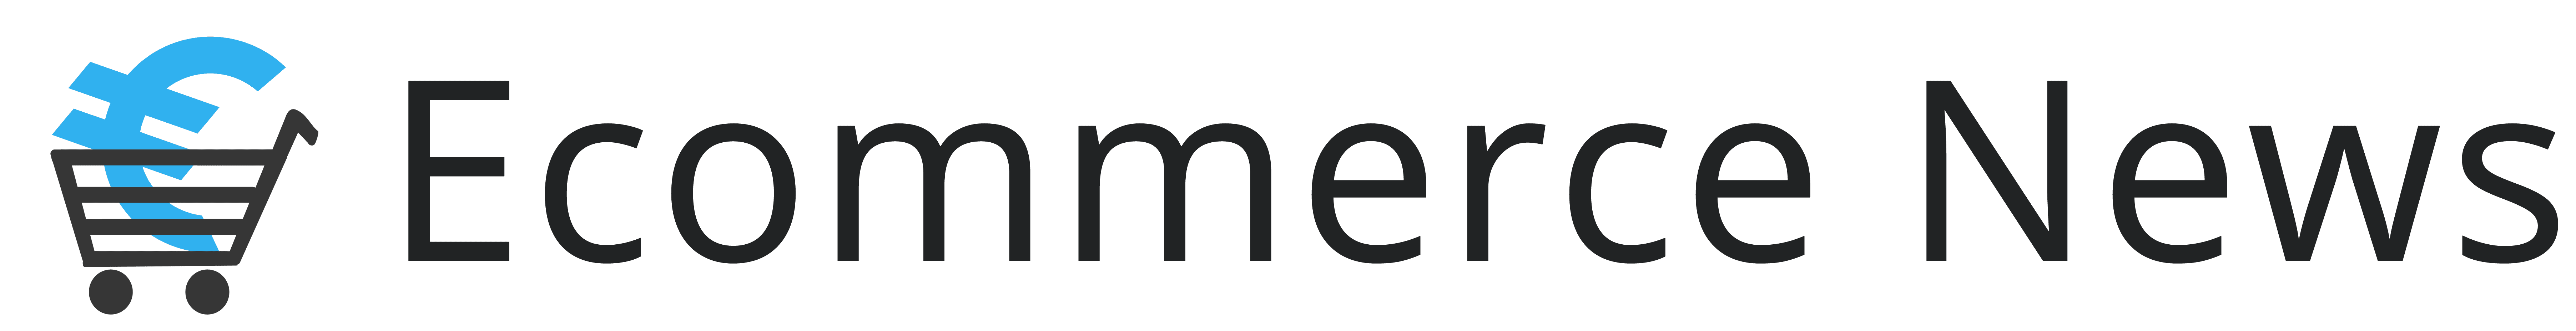 Logo for Ecommerce News